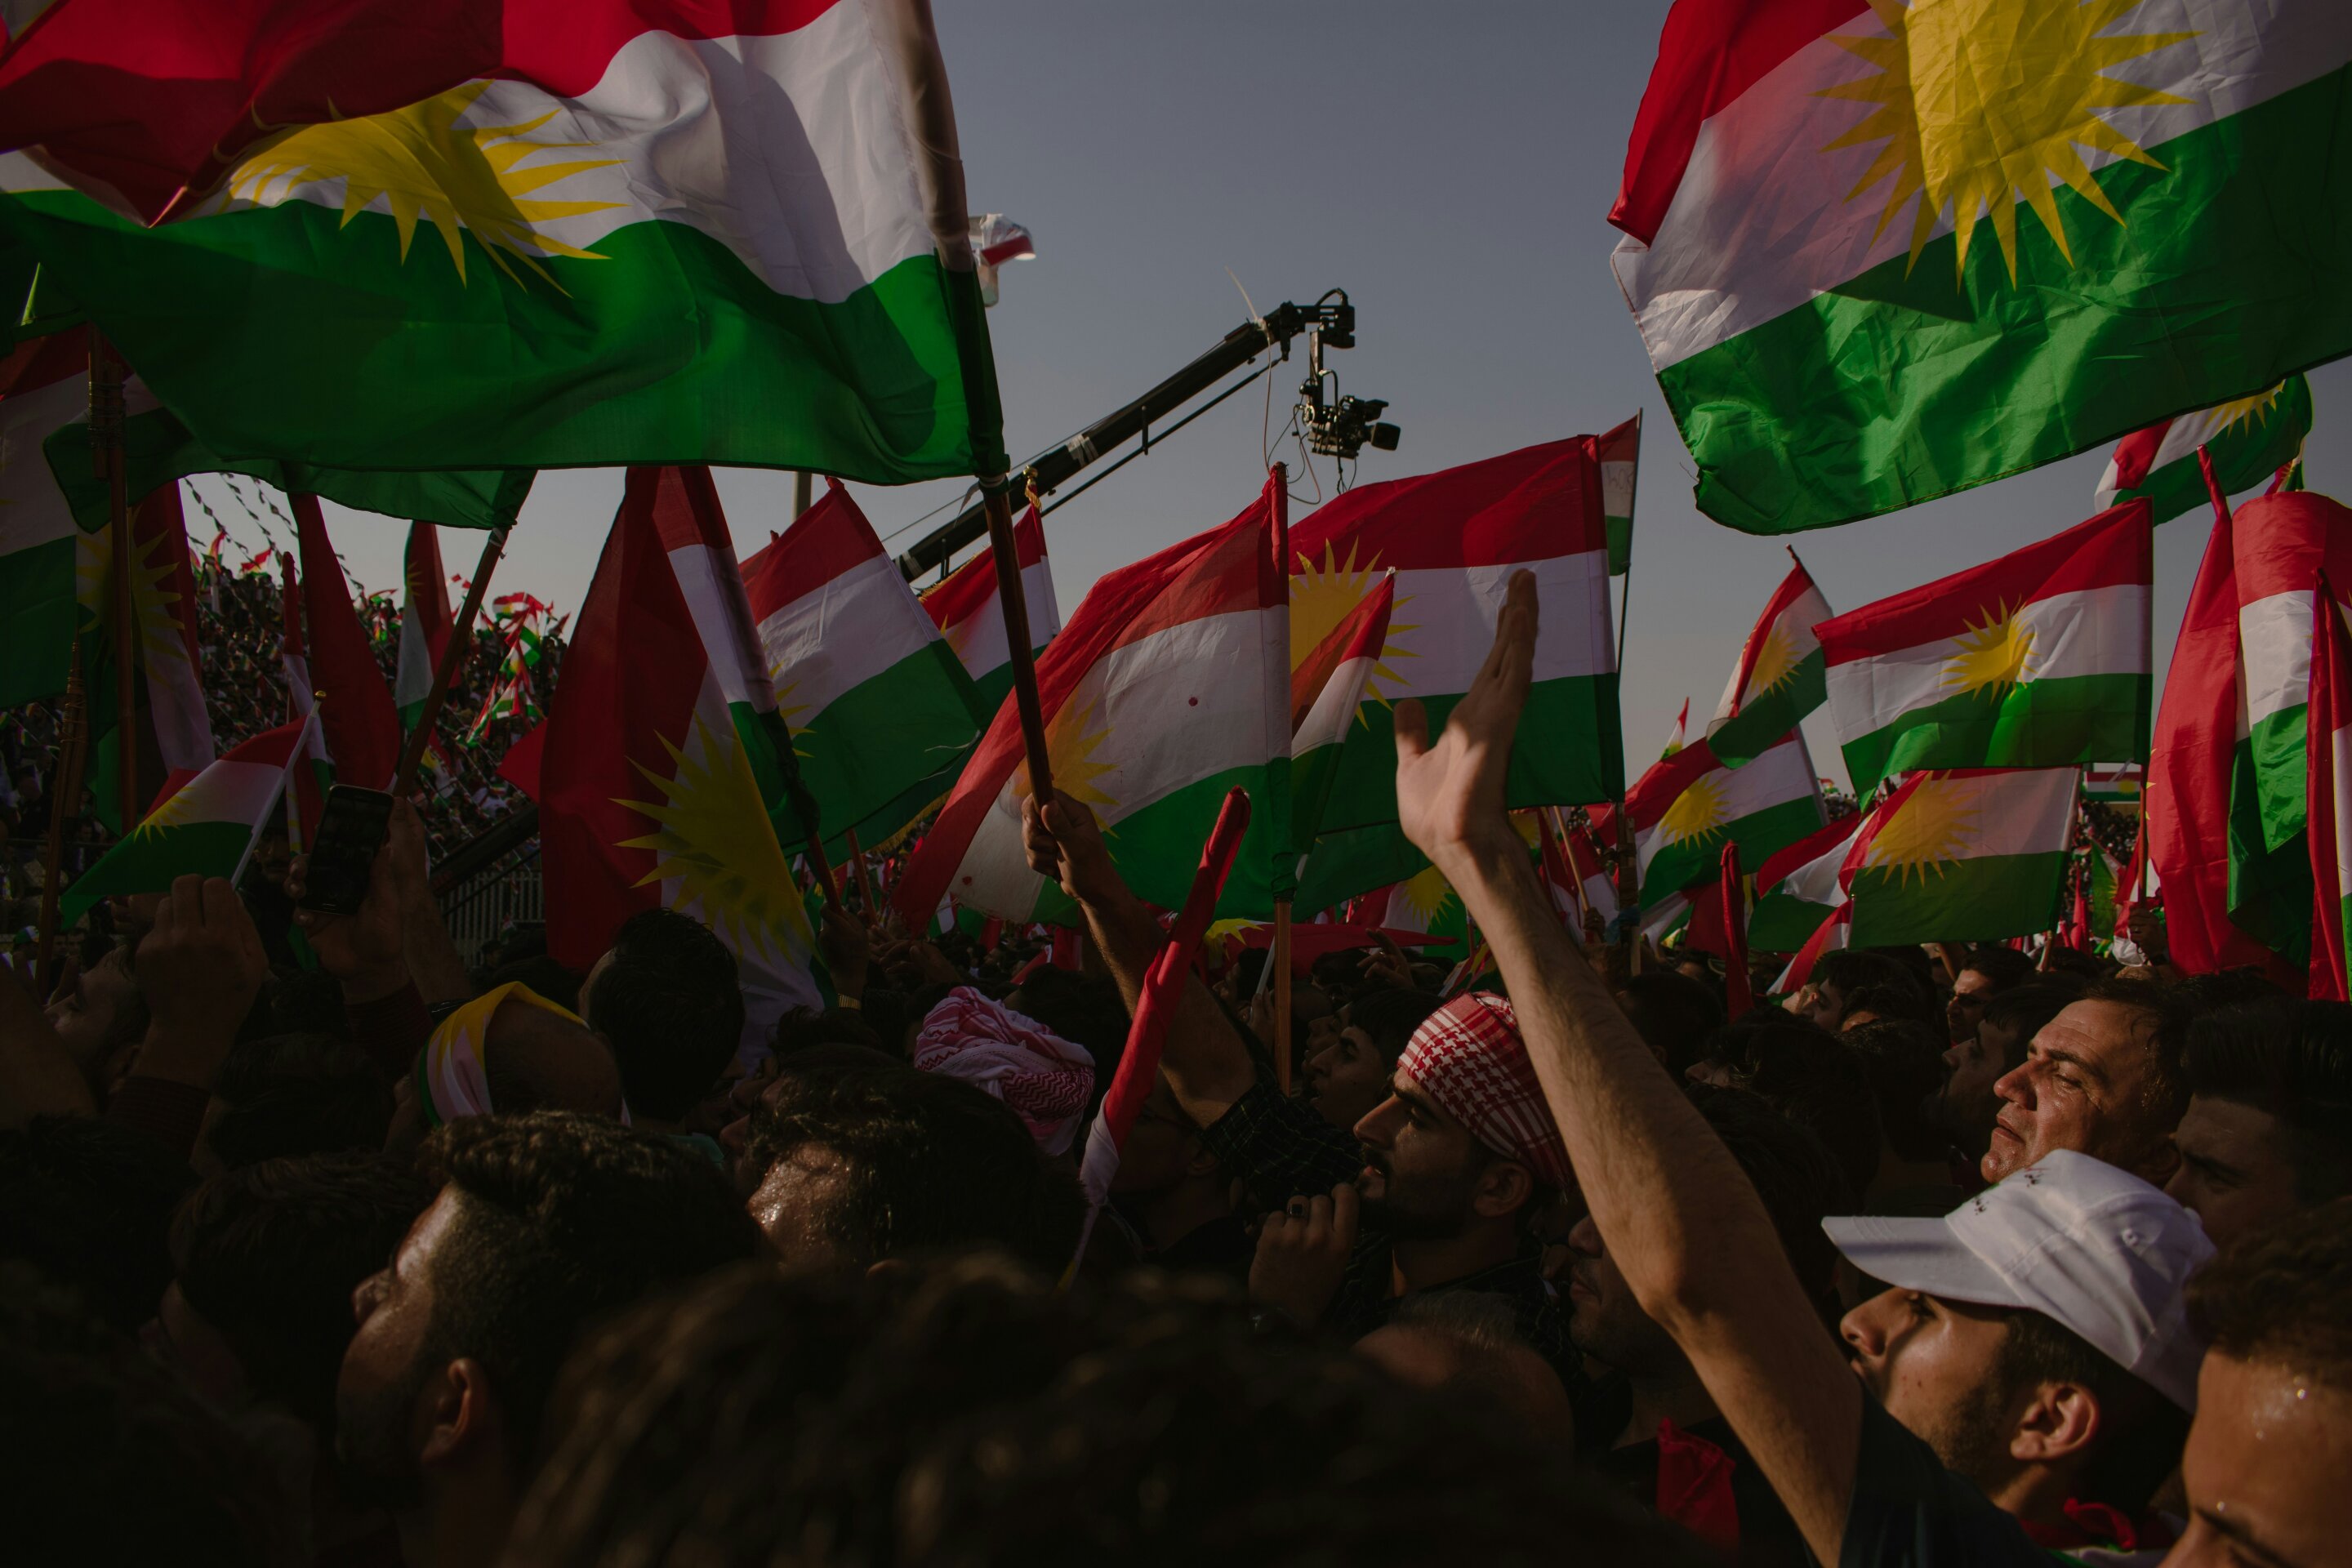 Kurdish uprisings have led to new ways for communities to claim Kurdish identity, study shows